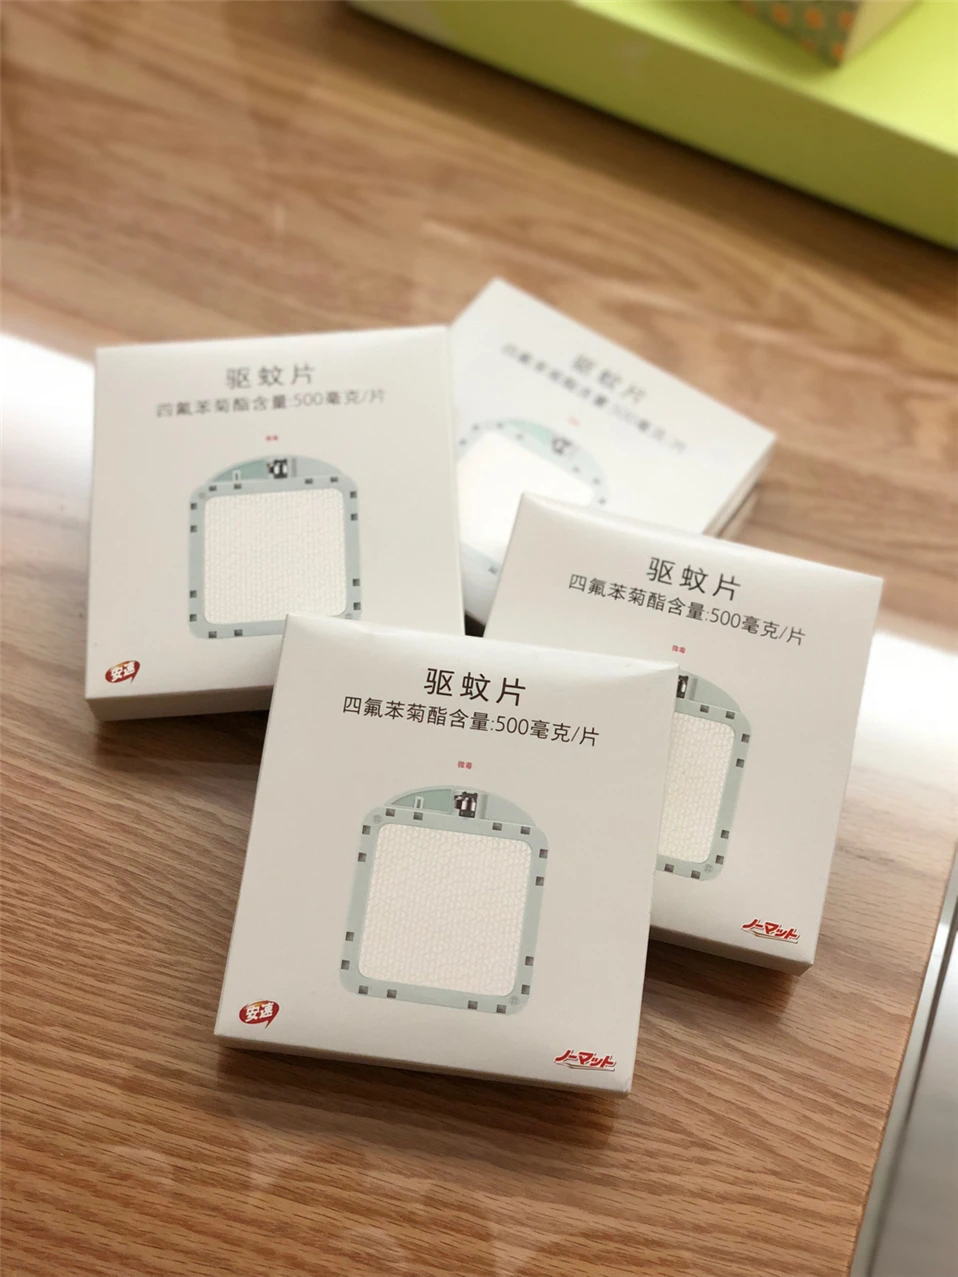 Xiaomi Mijia противомоскитные репеллентные накладки 90 дней использования долговечная сотовая конструкция для Mijia москитные репелленты убийца